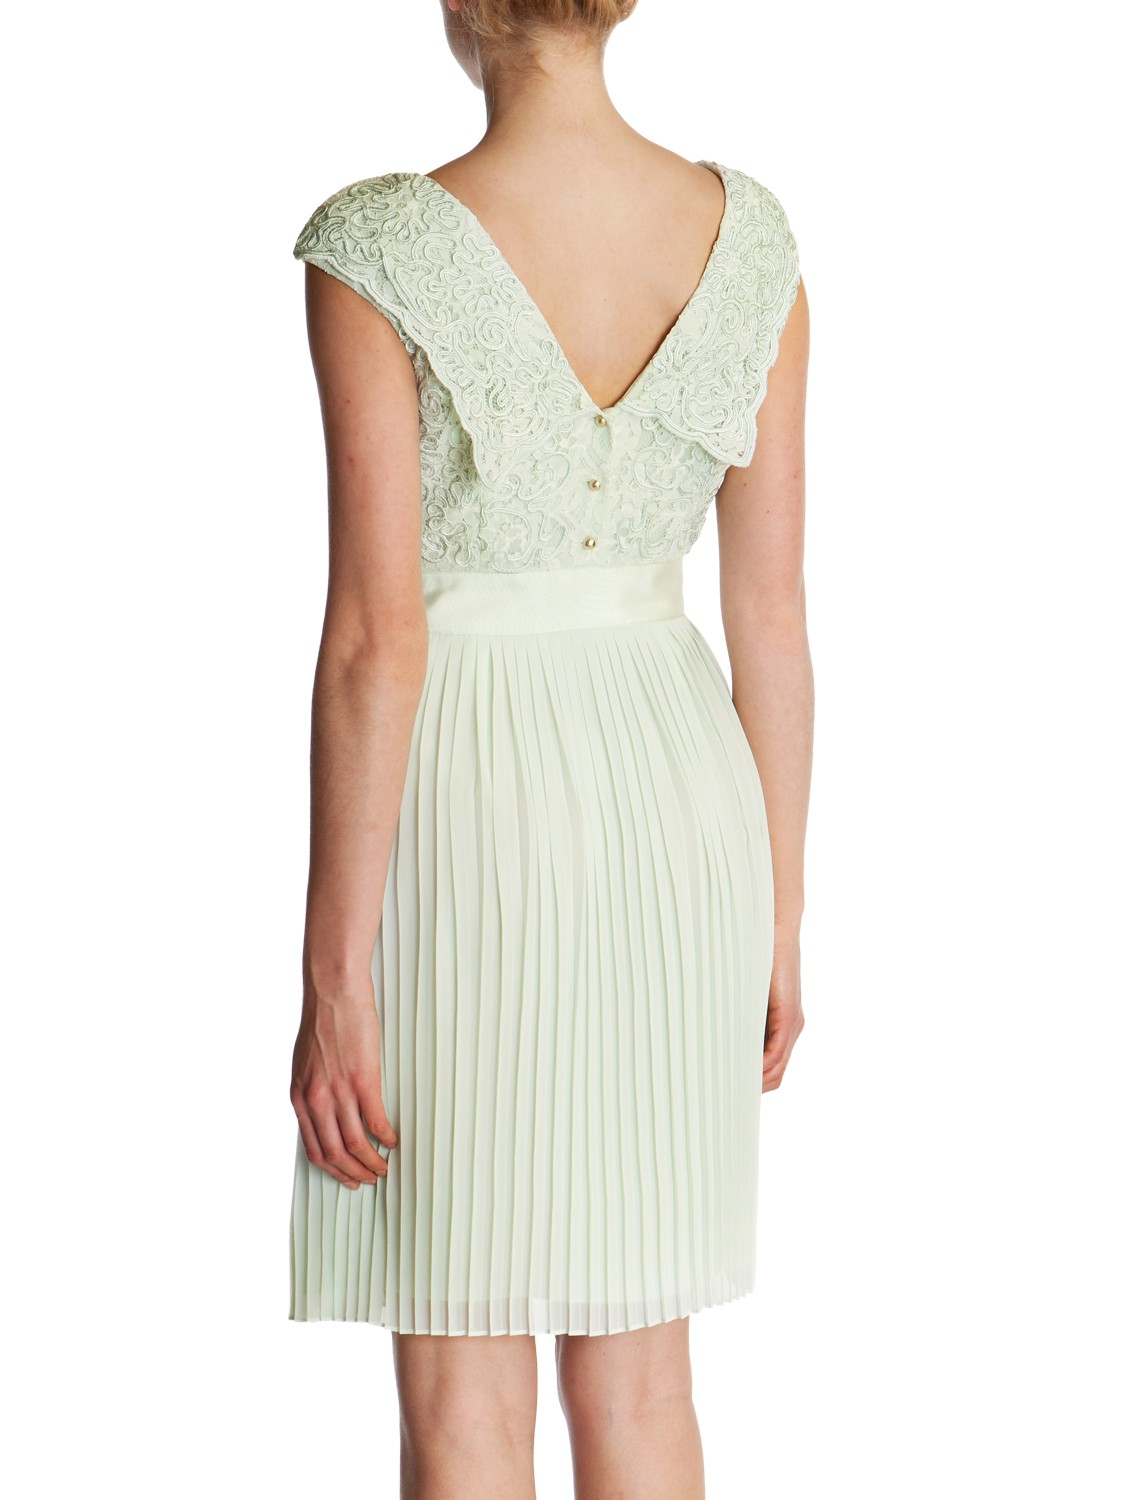 Ted Baker Mint Green Dress Online Deals ...